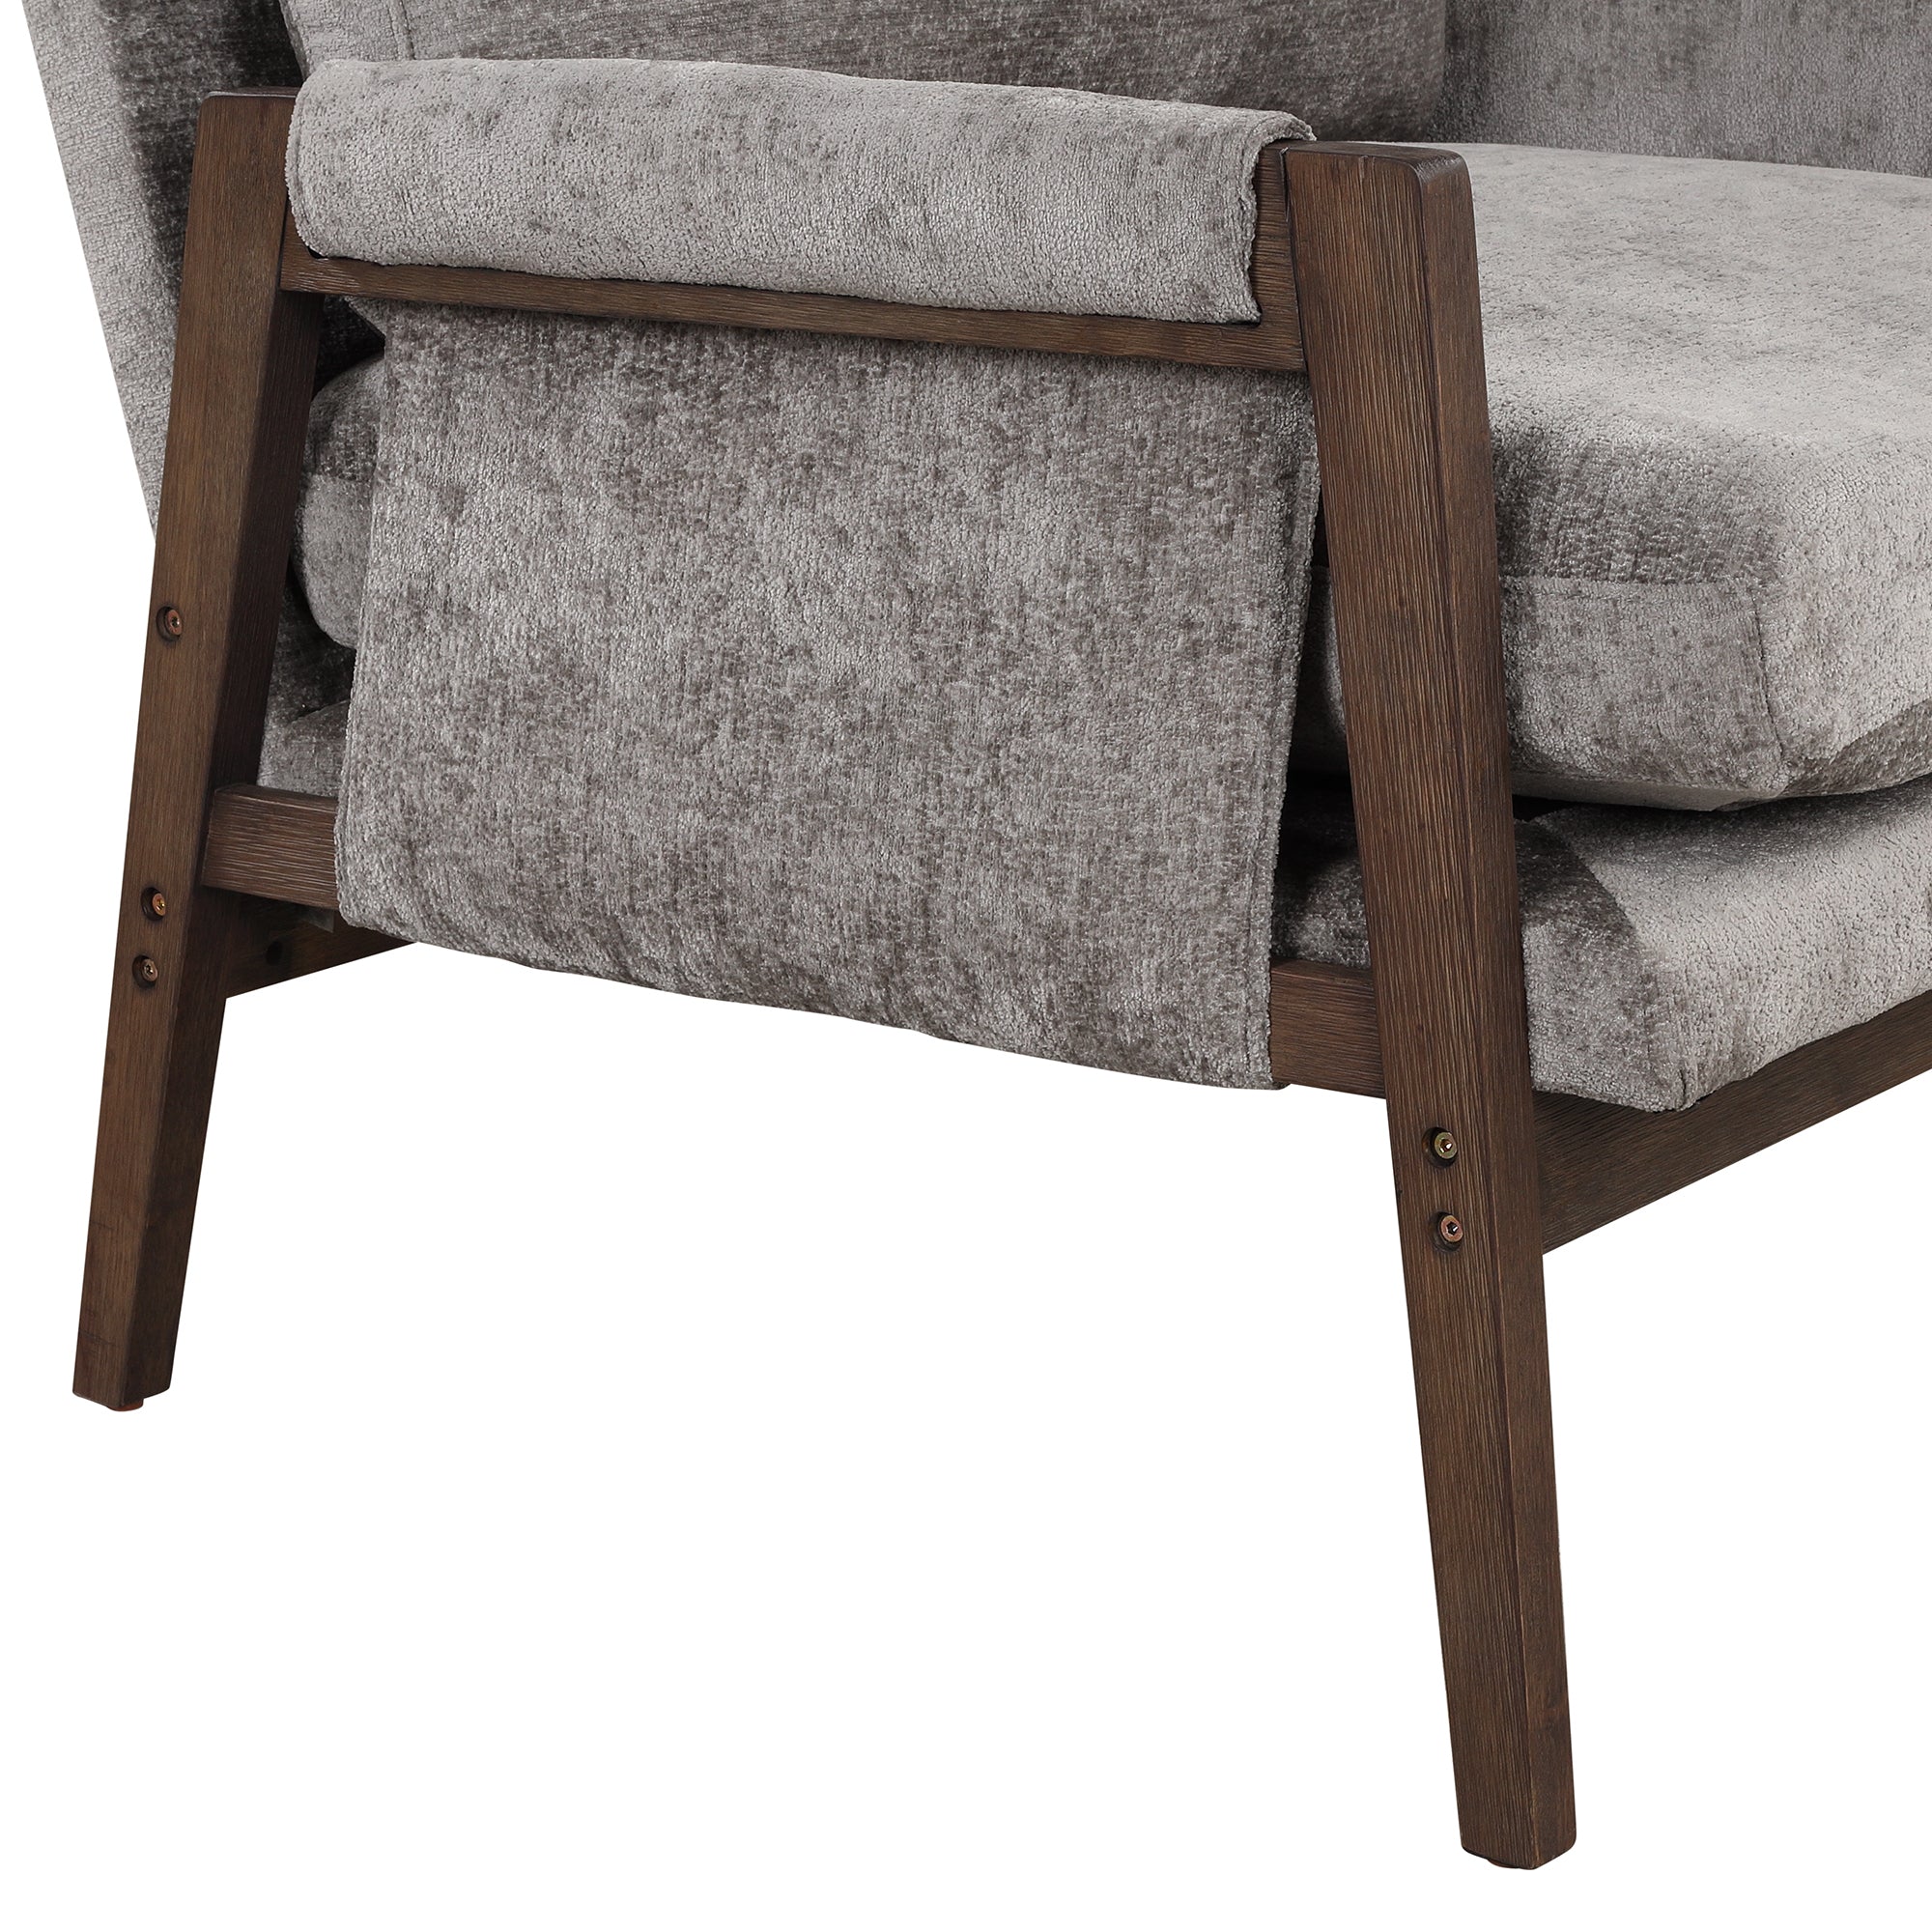 Mid Century Modern Velvet Accent Chair,Leisure Chair grey-foam-velvet